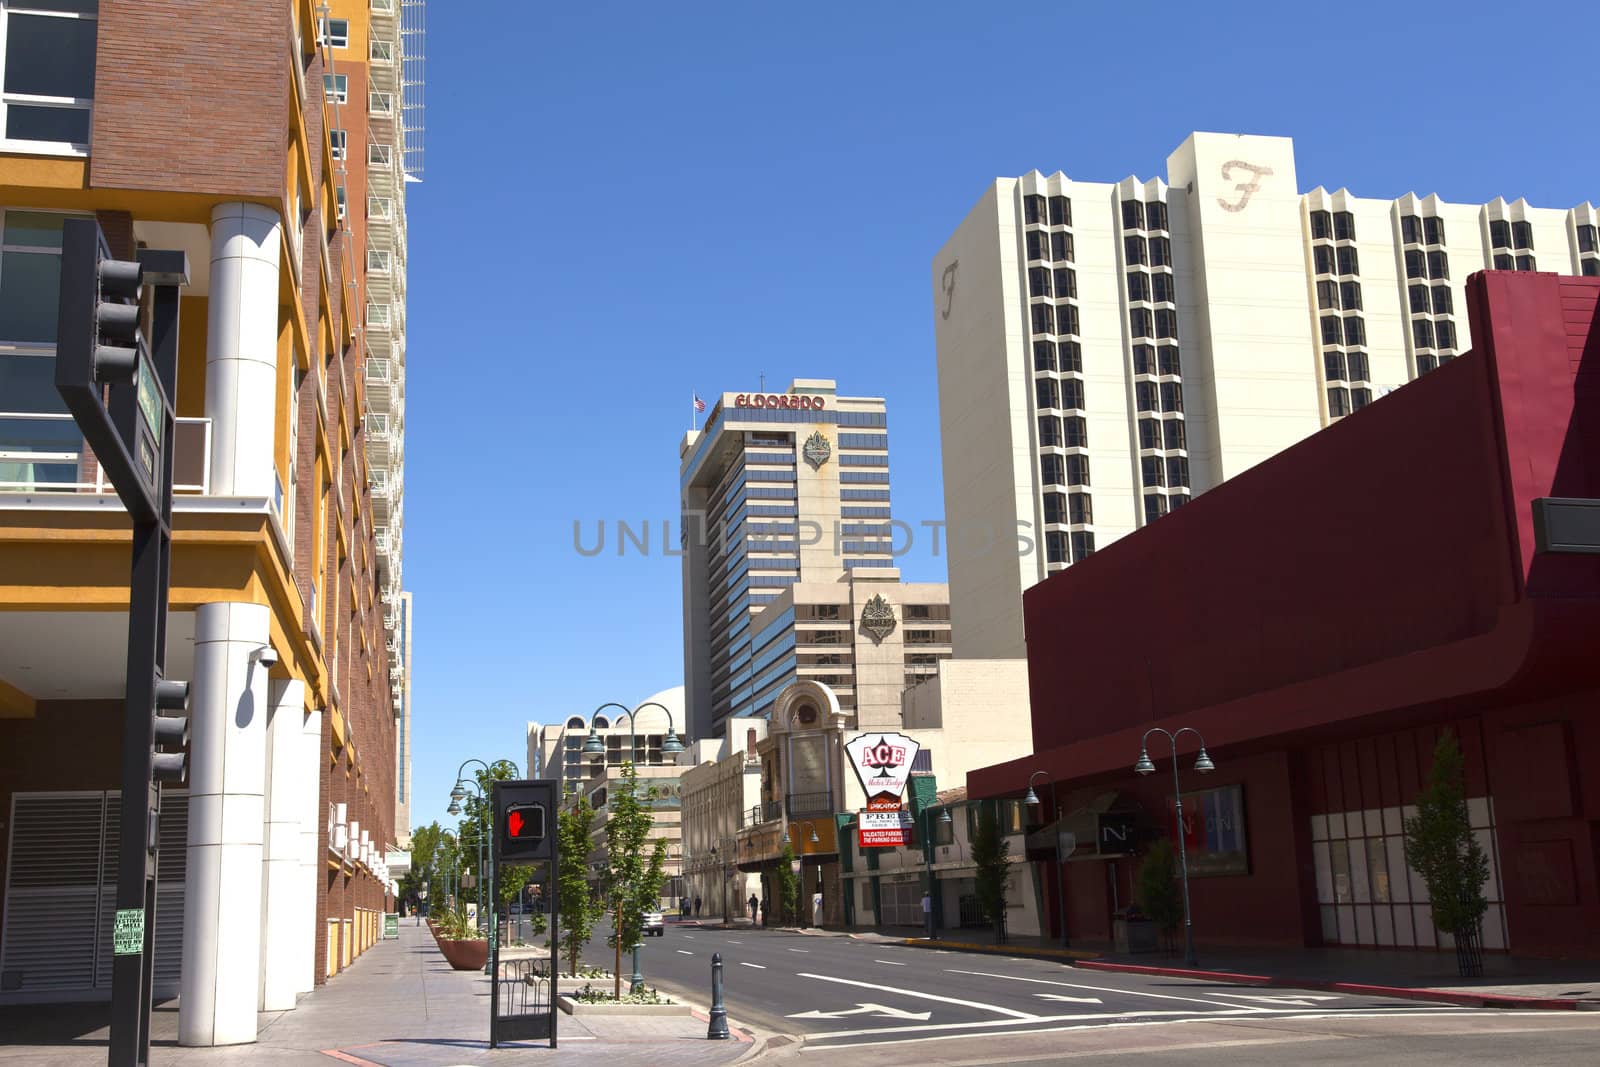 Reno Nevada street scene and architecture.